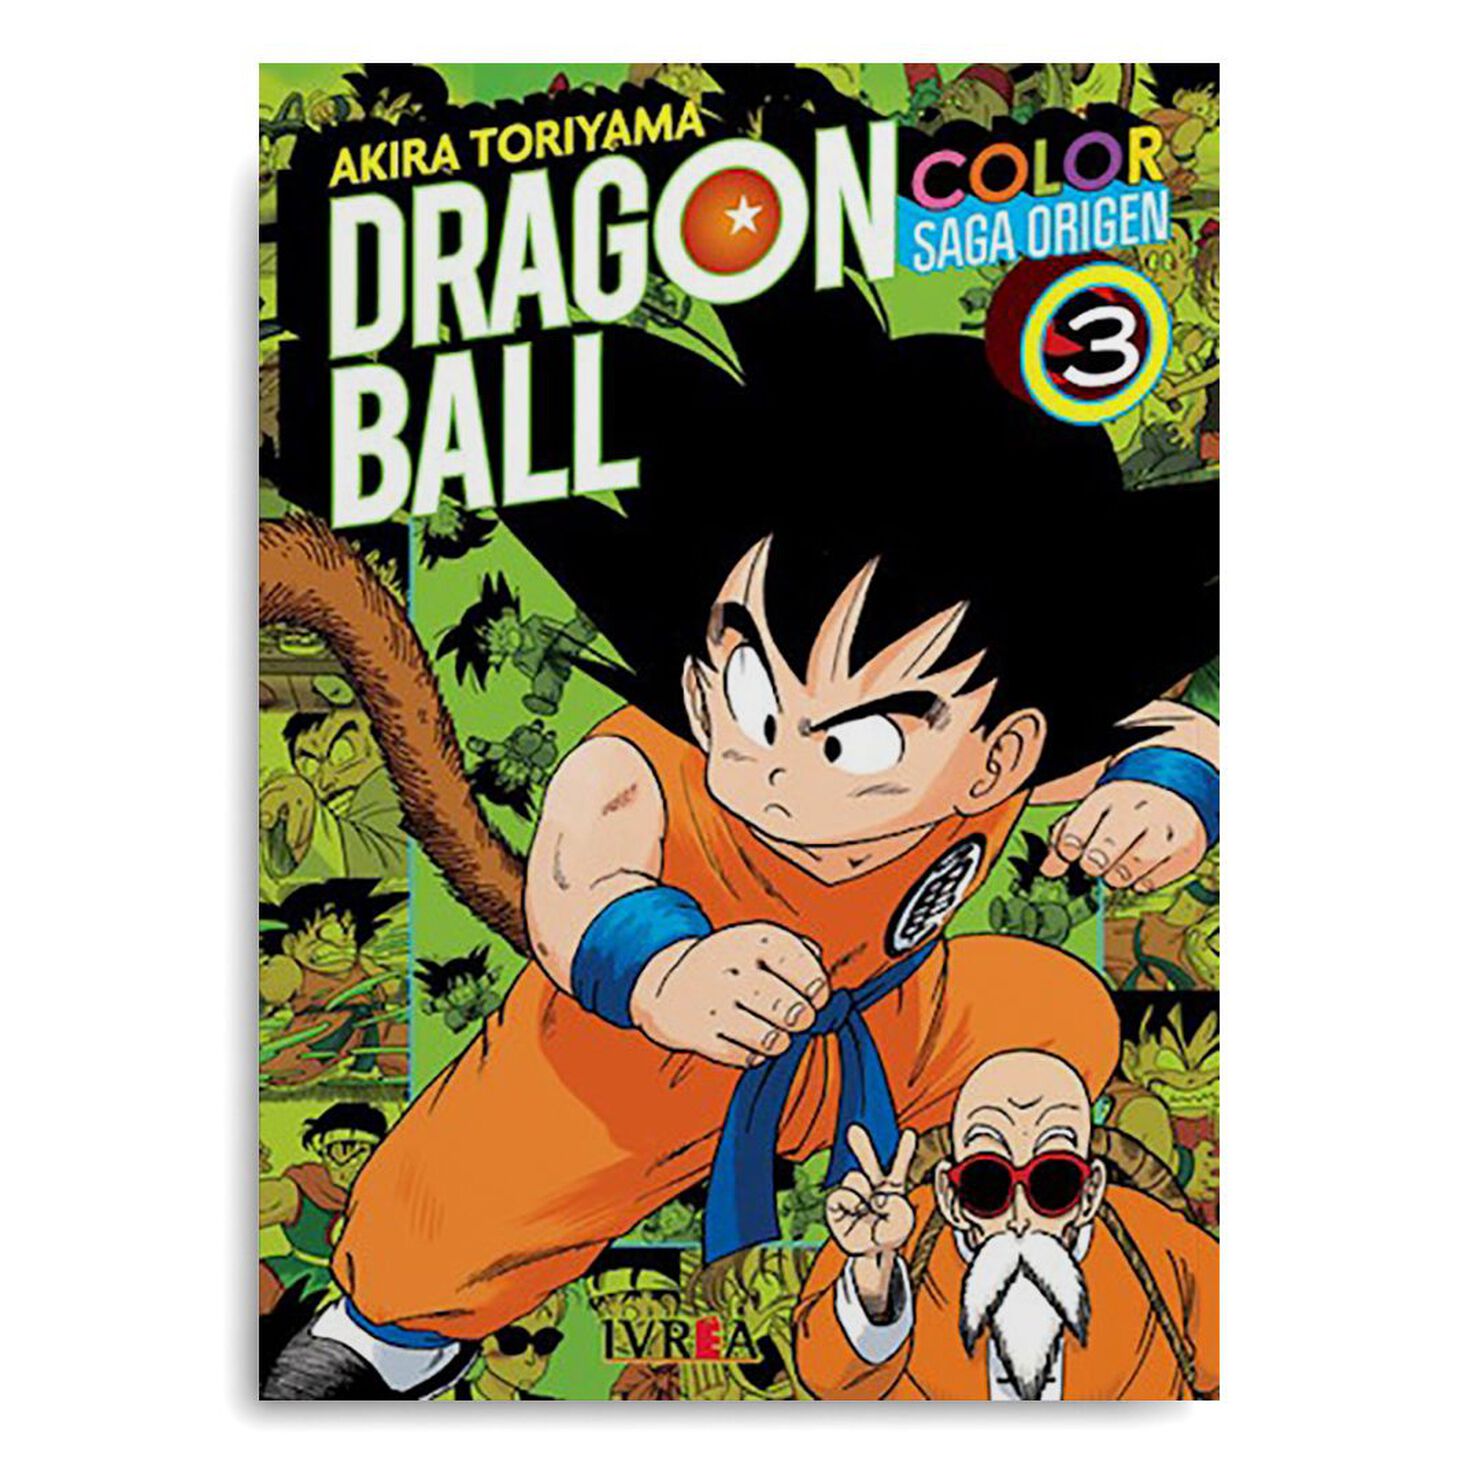 Manga Dragon Ball A COLOR Saga: Origen #3 Goku 